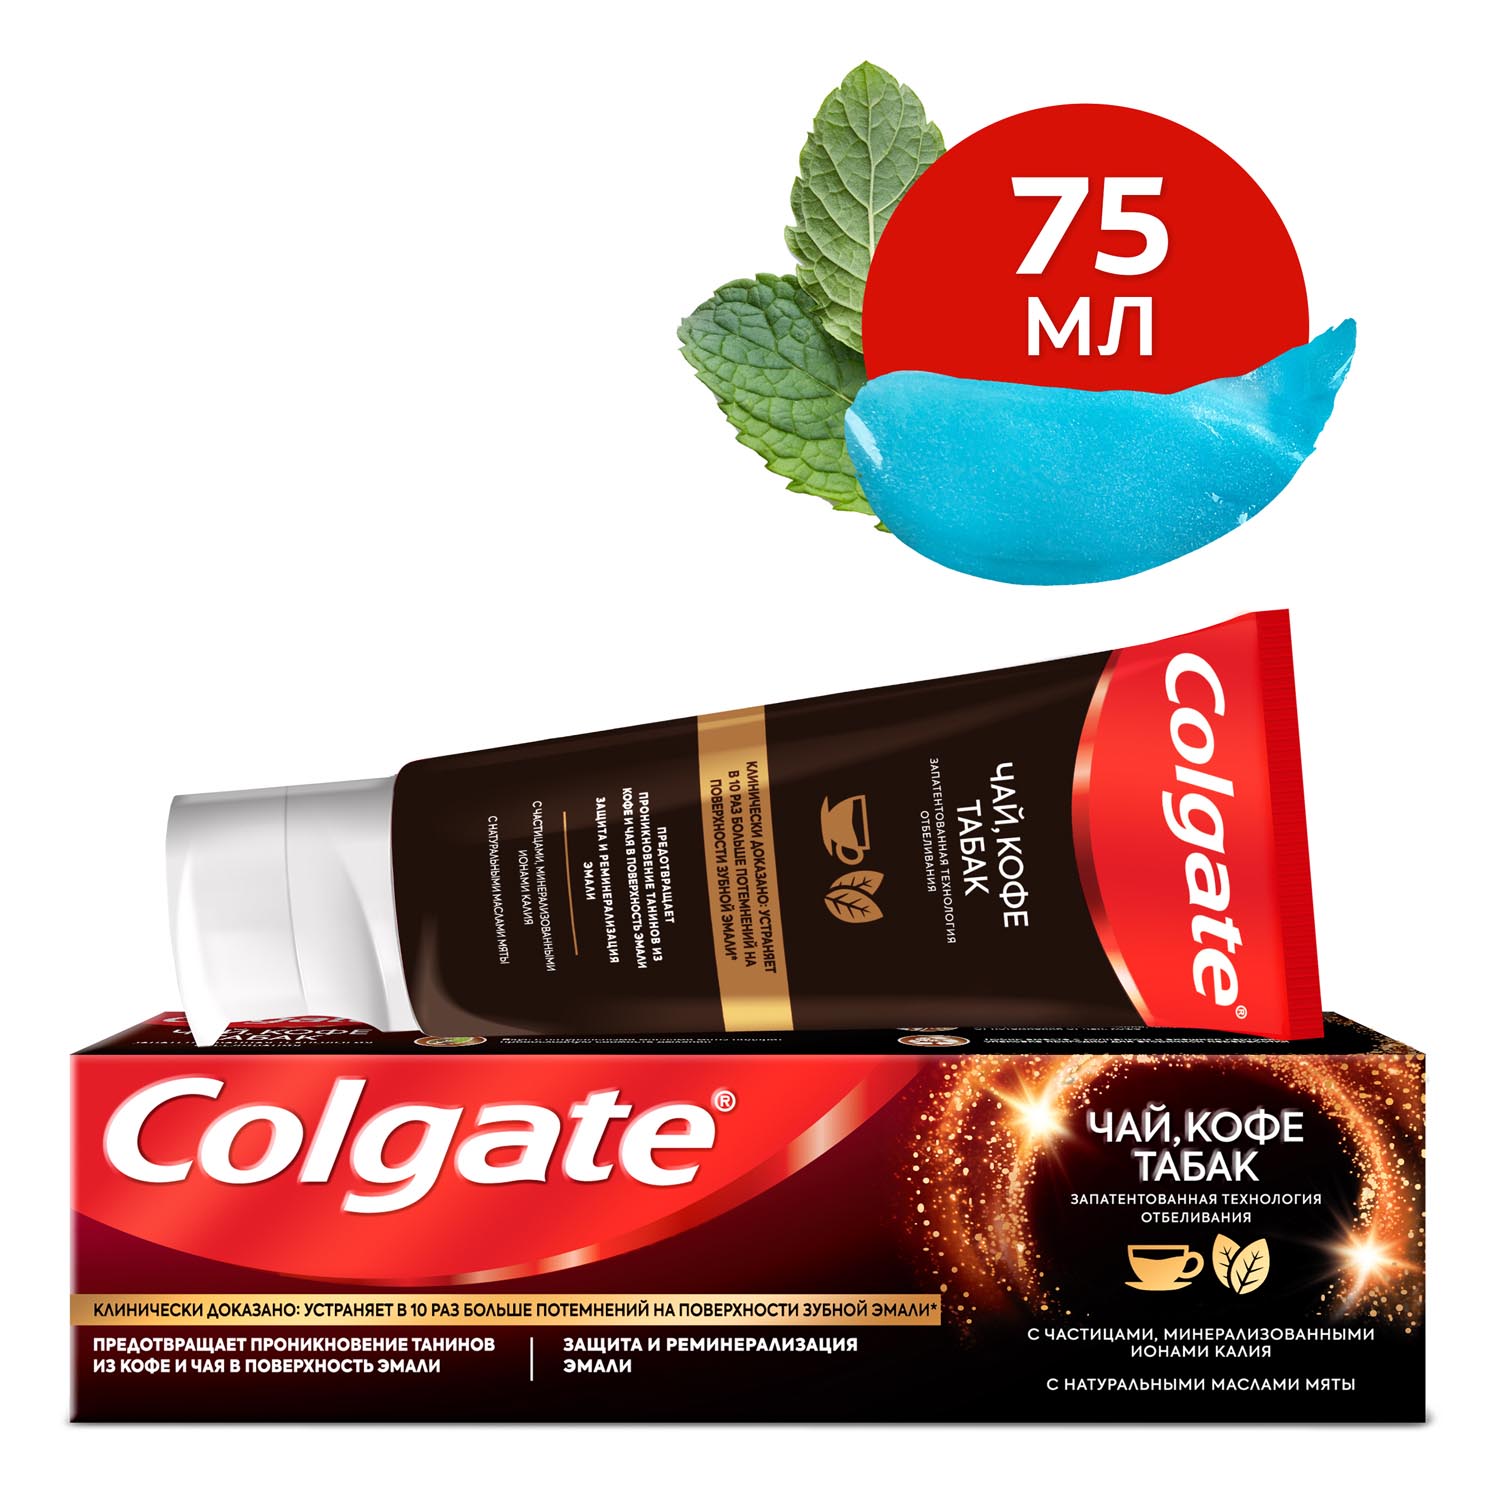 Зубная паста Colgate чай, кофе, табак отбеливающая с натуральными маслами мяты, 75 мл паста зубная colgate sensitive отбеливание 75 мл